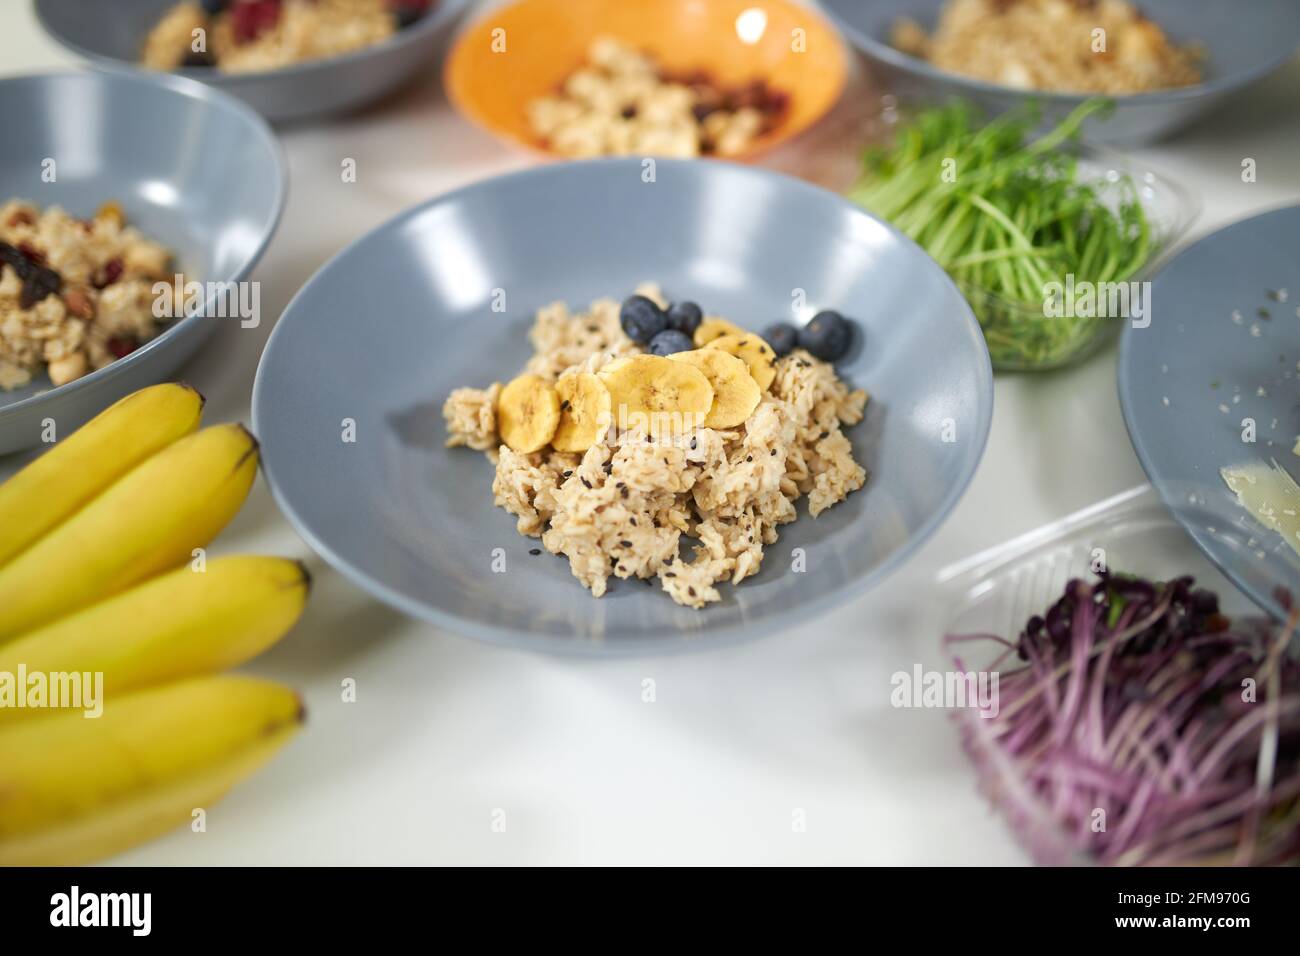 Primo piano di porridge gustoso e sano con frutta fresca in bella piastra blu. Concetto di cottura a processo delizioso piatto a casa con ingredienti gustosi, verdure fresche e frutta. Foto Stock